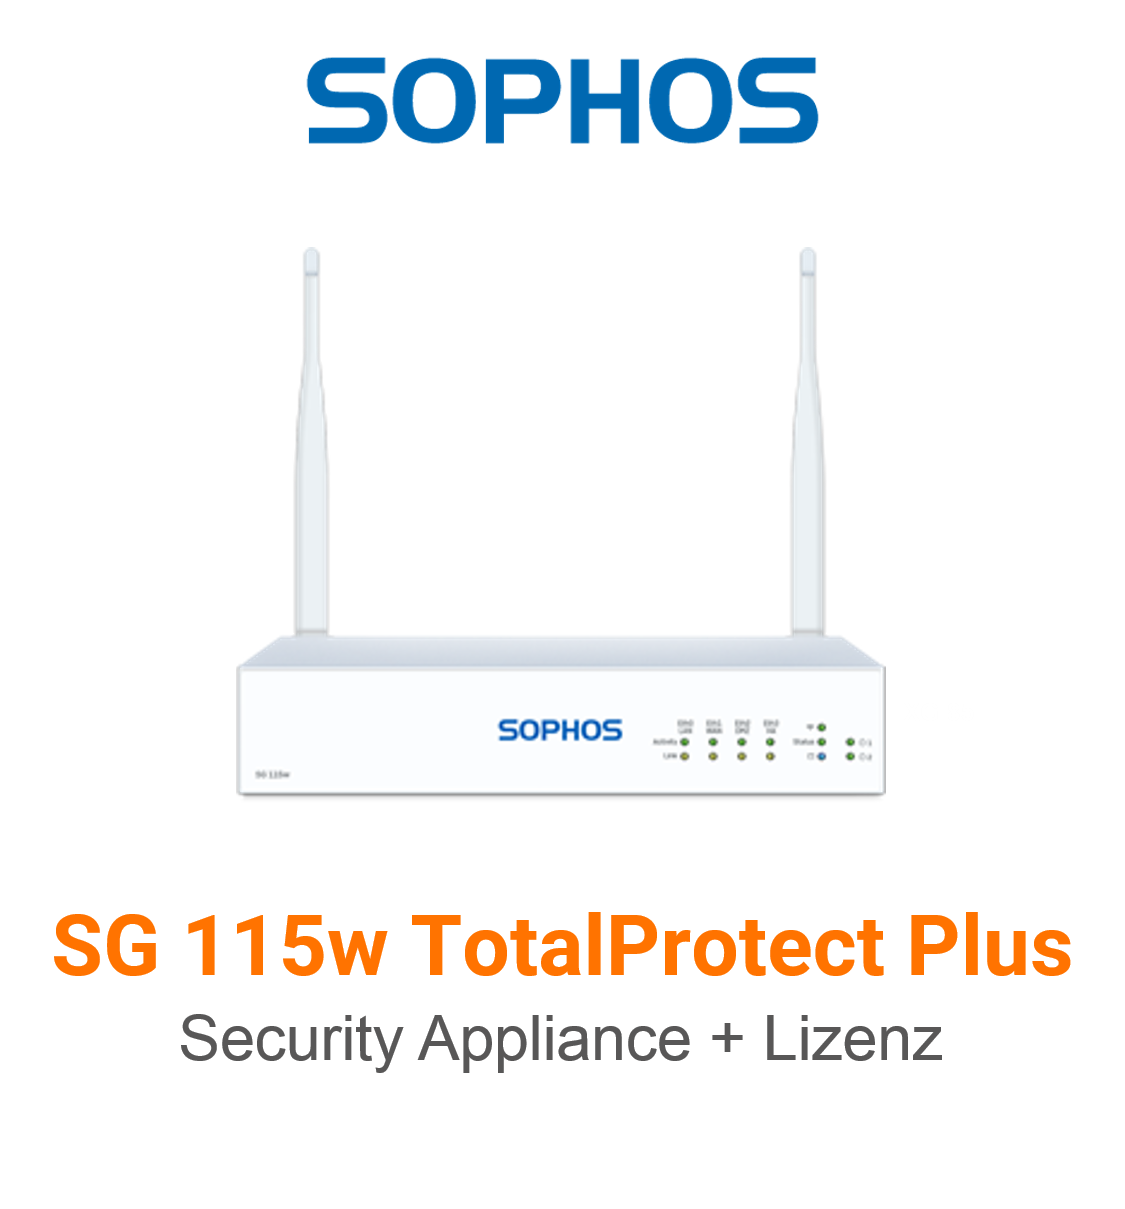 Sophos SG 115w TotalProtect Security Appliance + Lizenz Vorschaubild